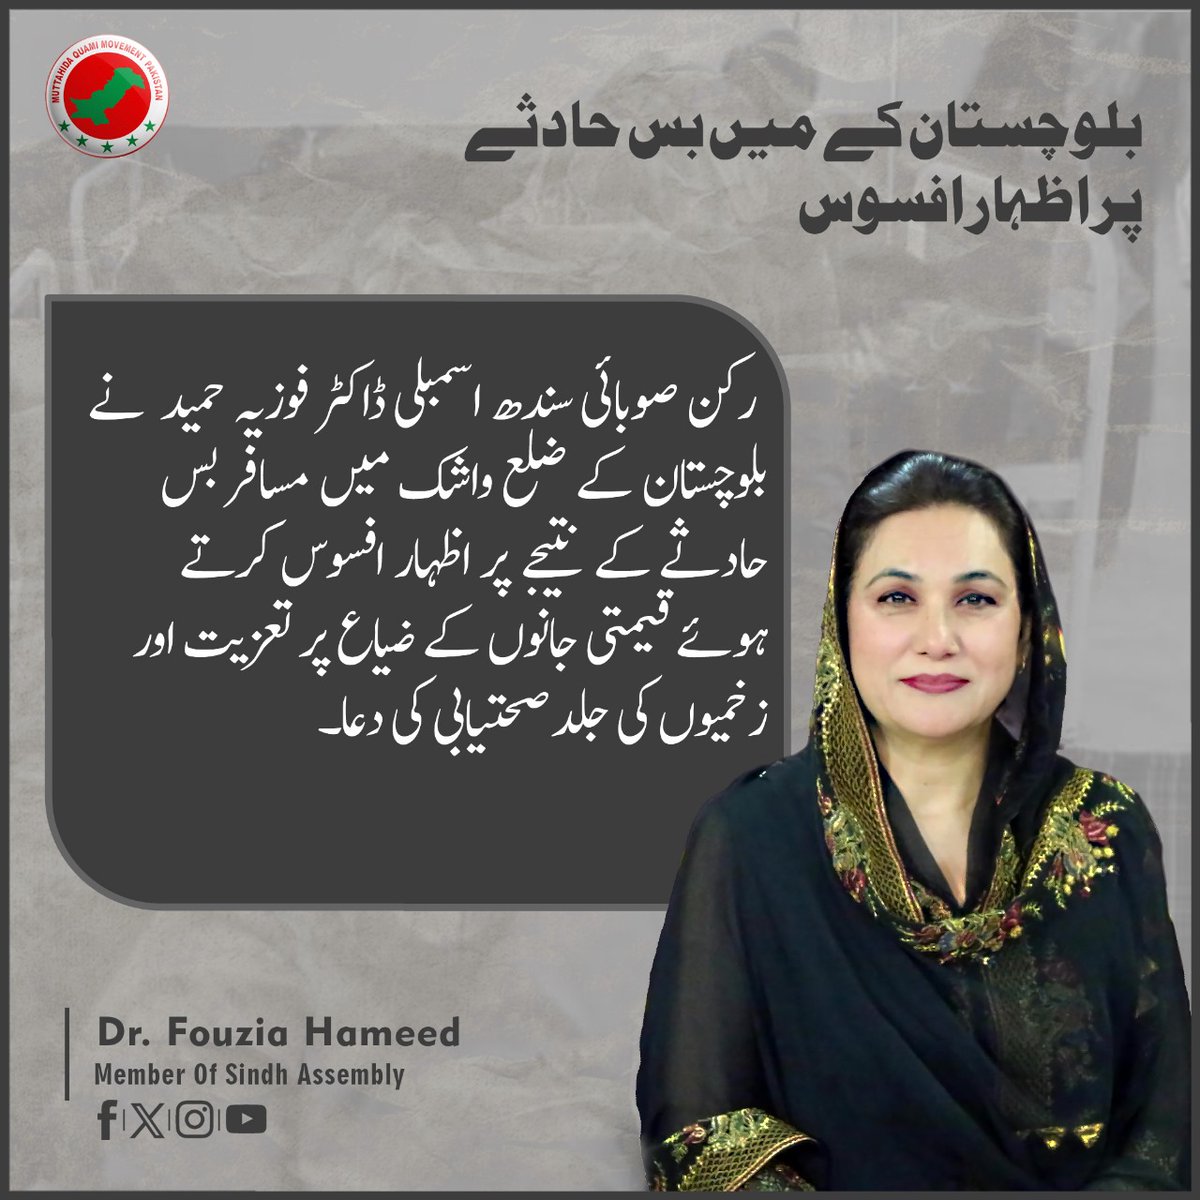 رکن صوبائی سندھ اسمبلی ڈاکٹر فوزیہ حمید نے بلوچستان کے ضلع واشک میں مسافر بسحادثے کے نتیجے پر اظہار افسوس کرتے ہوئے قیمتی جانوں کے ضیاع پر تعزیت اور زخمیوں کی جلد صحتیابی کی دعا.!!
#FouziaHameed #PS110 #MQMPakistan